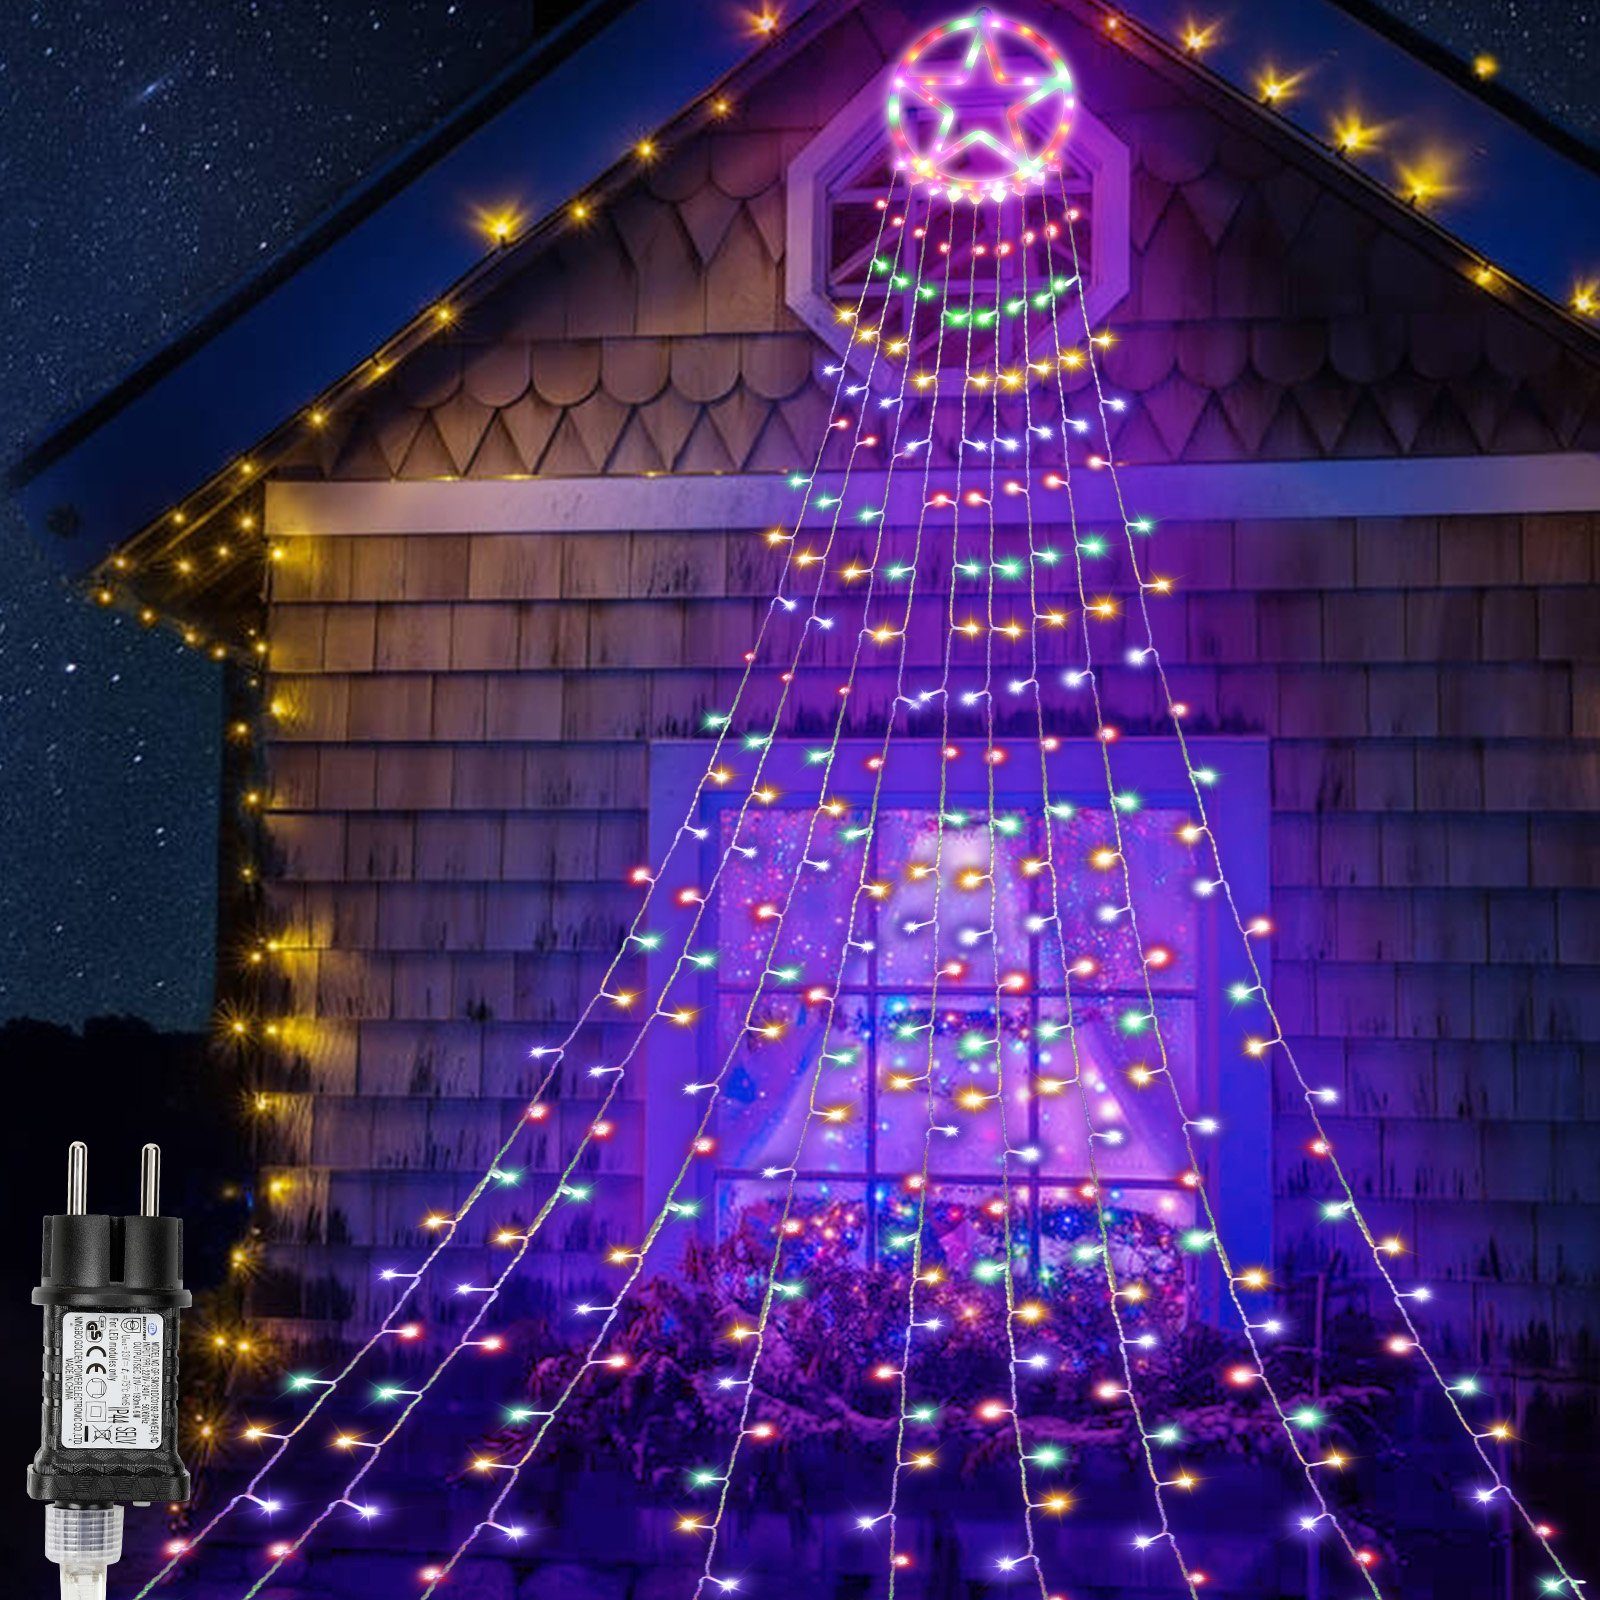 Gimisgu LED Weihnachtsbaum LEDs Weihnachtsbaumkette LED-Lichterkette Lichterkette 319 Bunt